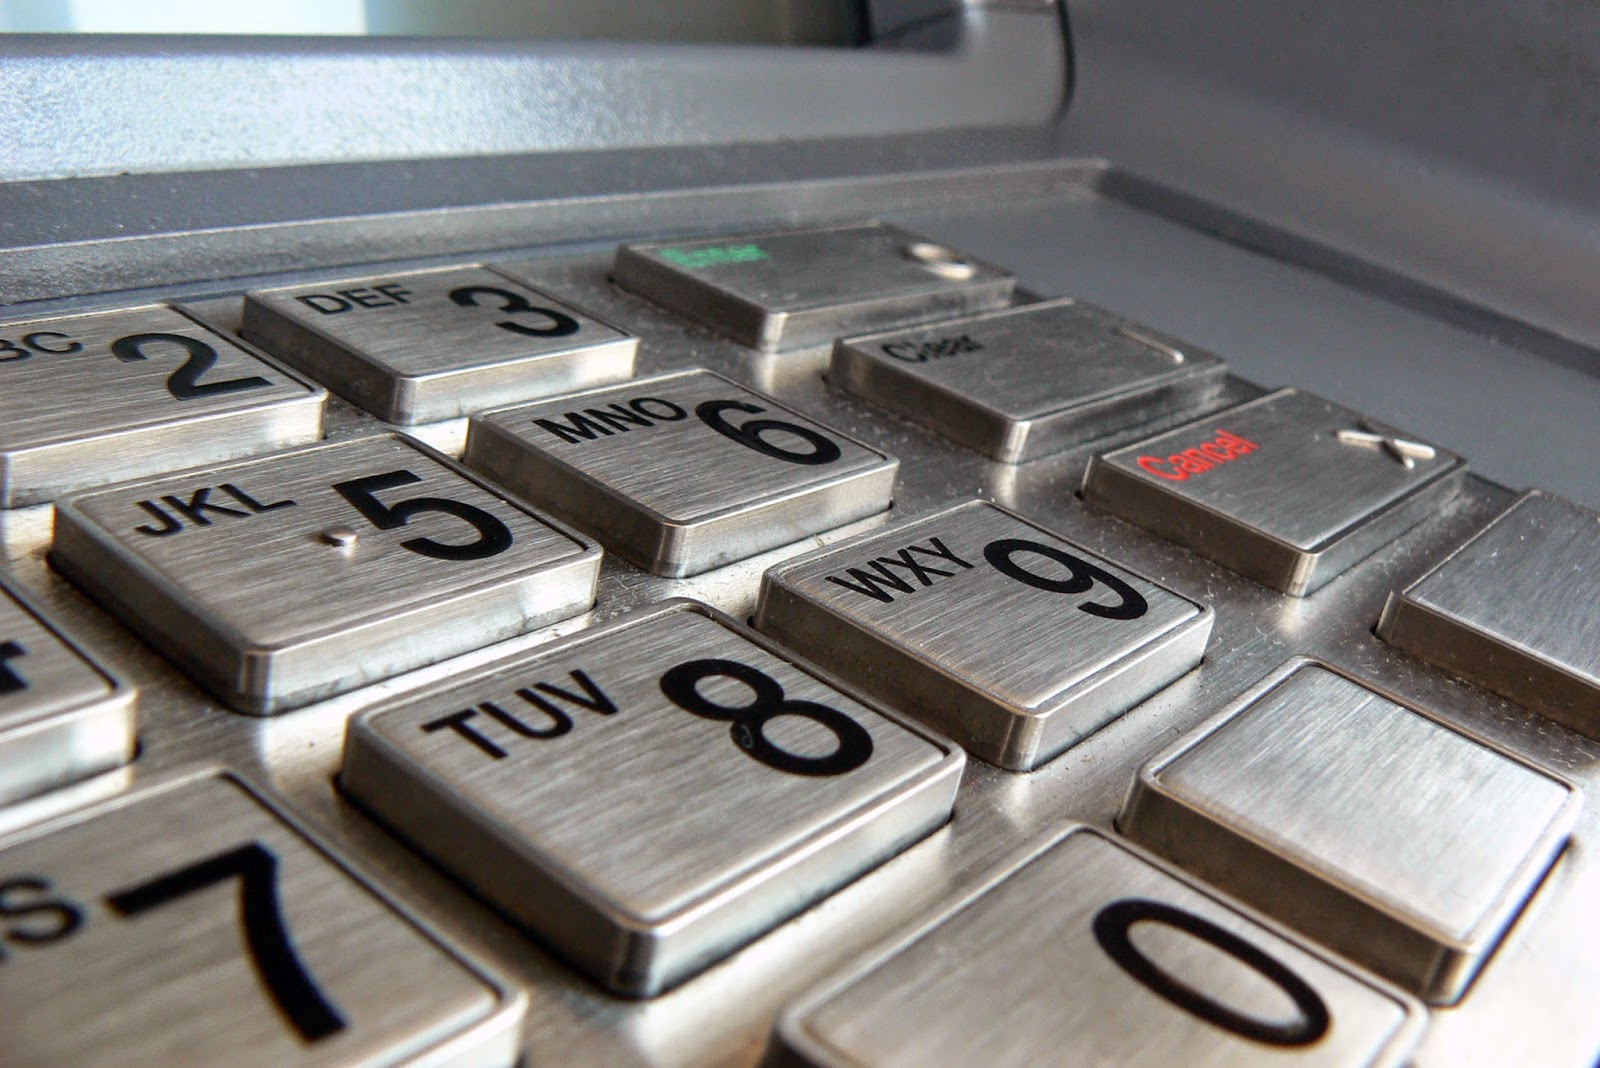 Gagal Melakukan Pembayaran BPJS Lewat ATM? Ini Solusinya ...